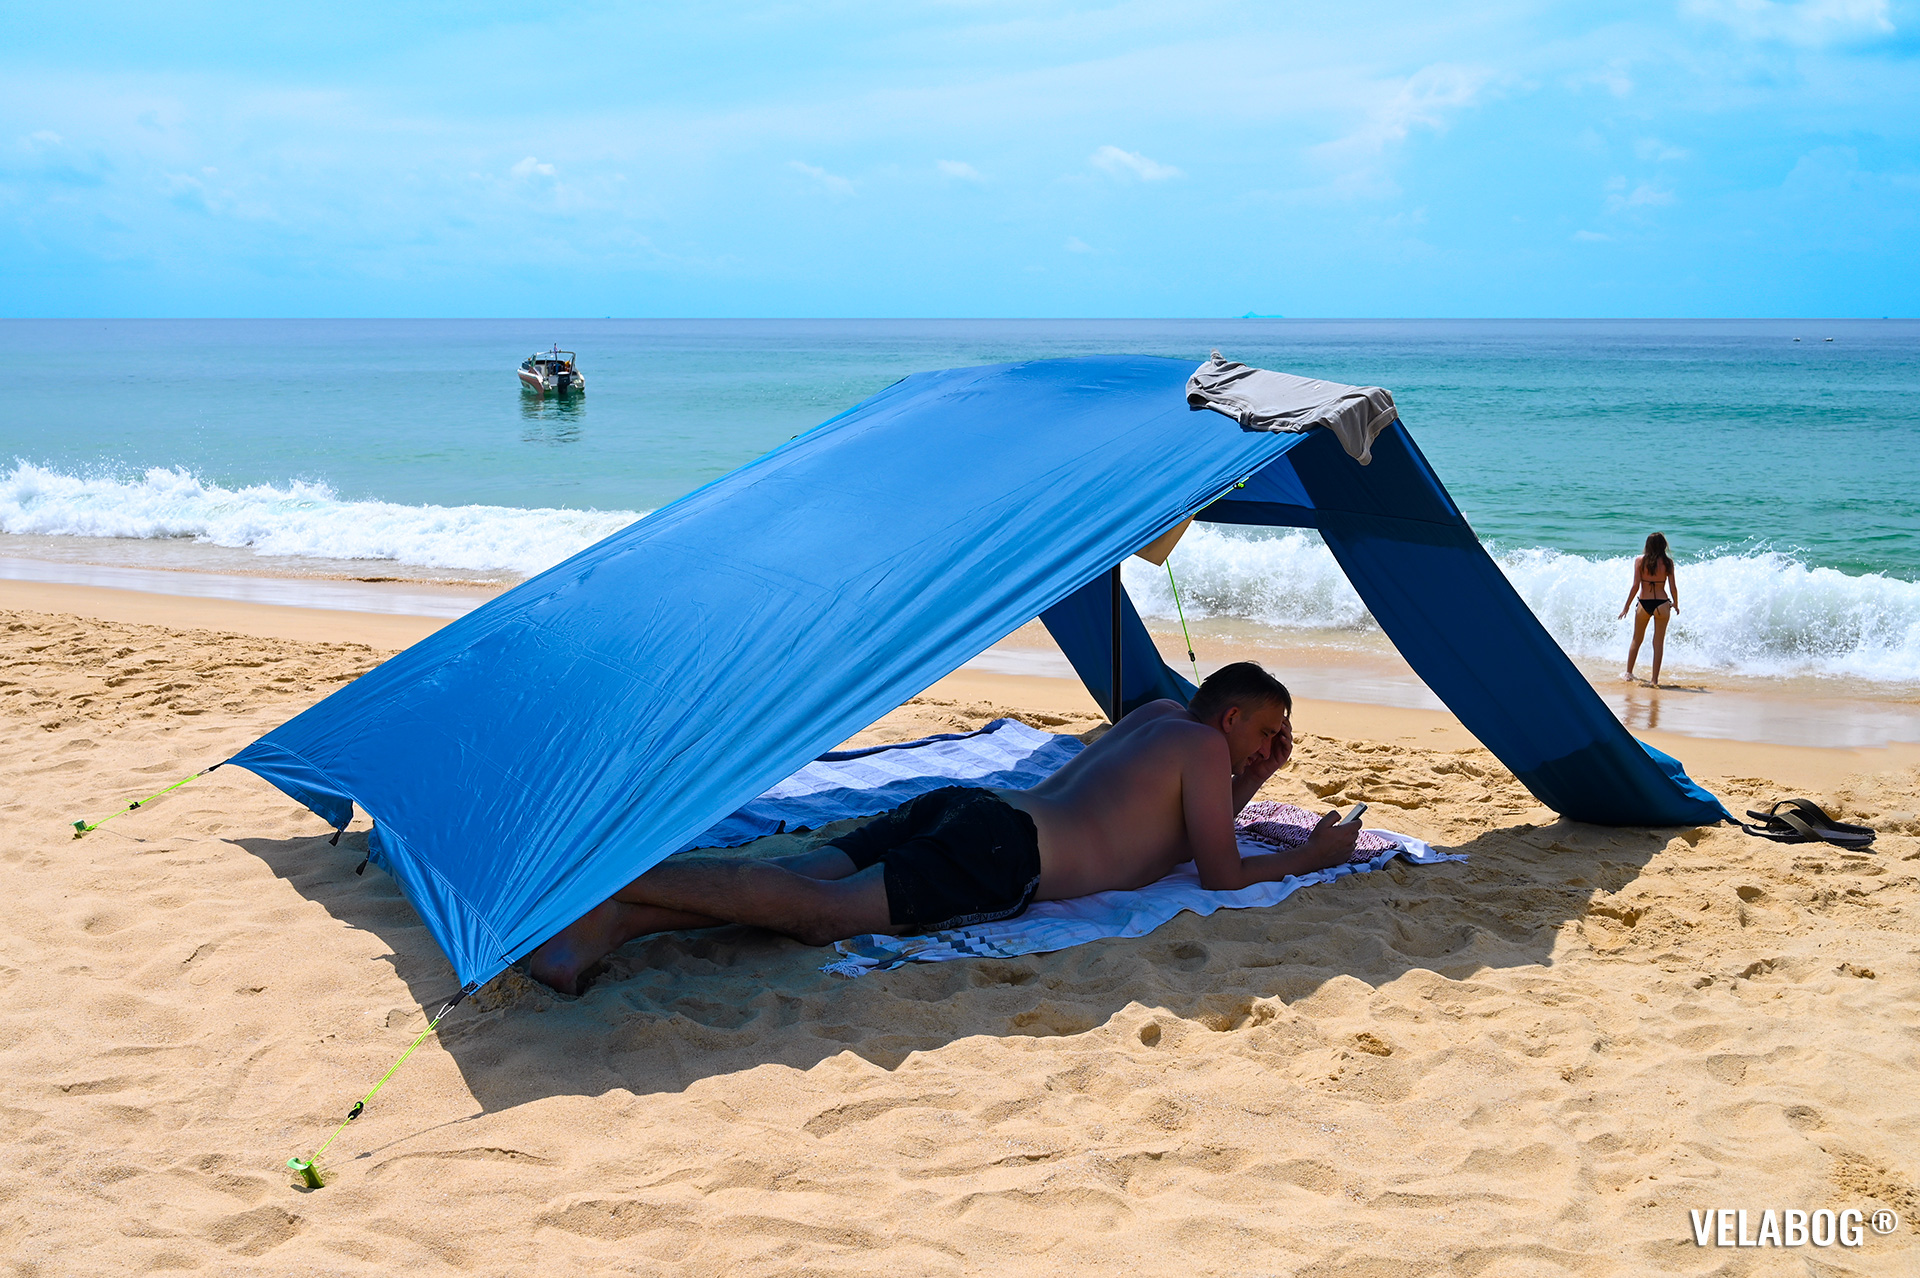 Strand Sonnensegel Strandzelt Velabog Breeze, blau. Bester Sonnenschutz Strand auch ohne Wind in Thailand. Grosser Schatten, kein Hitzestau. Test Strand Sonnensegel Aufbauoption - kein, leichter oder böiger Wind.